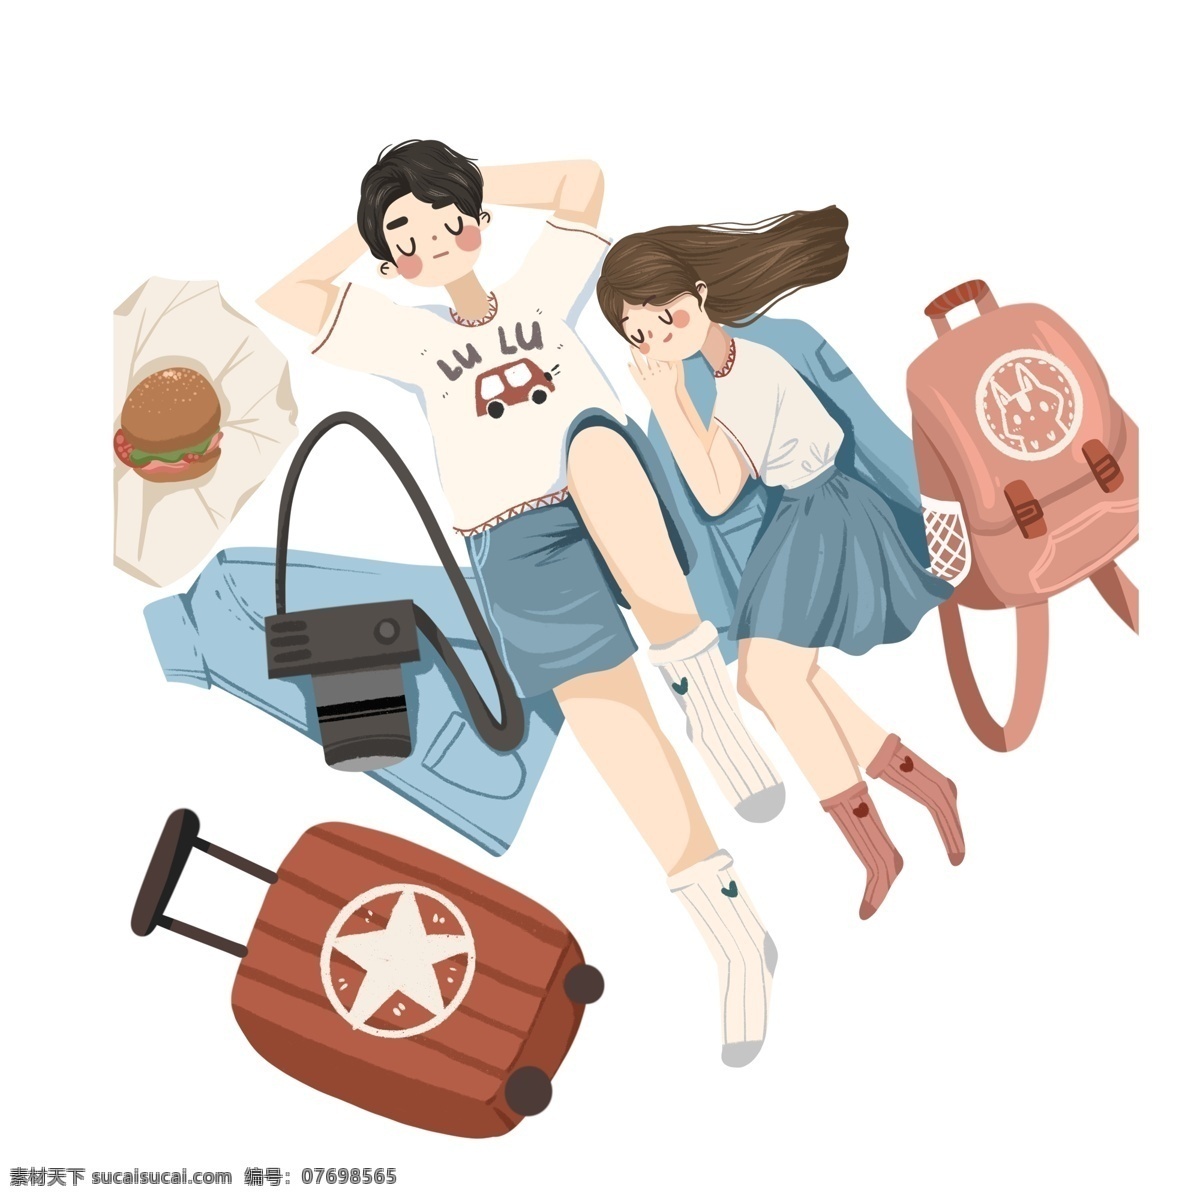 卡通 小 清新 春季 旅行 情侣 卡通复古 小清新 学生 行李箱 背包 插画 小情侣 男孩 女孩